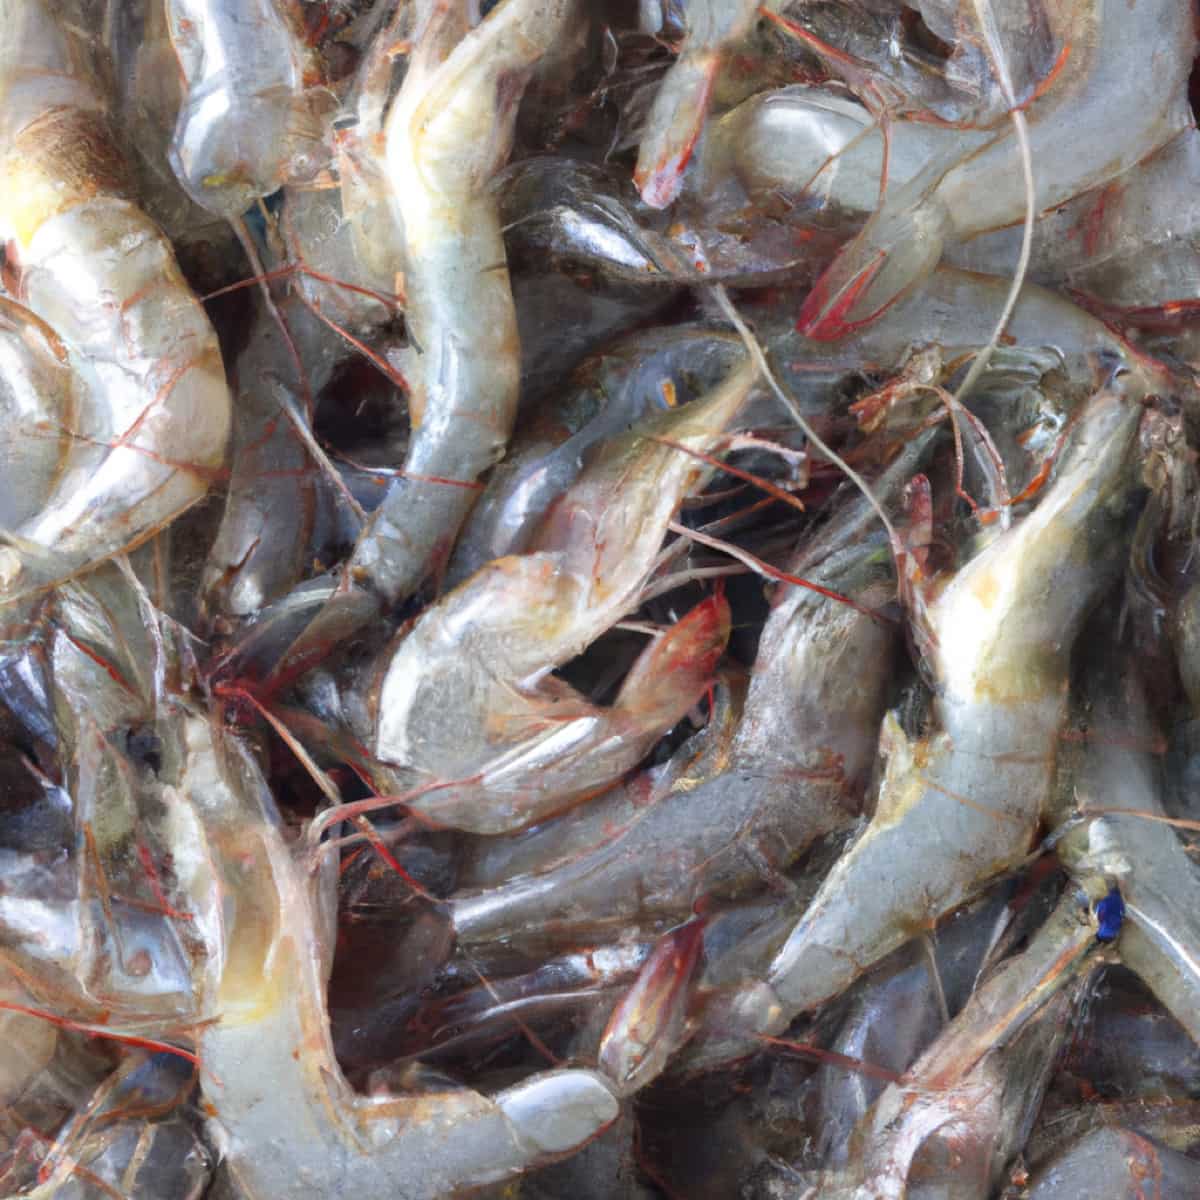 Increase Vannamei Shrimp Farming Yield6